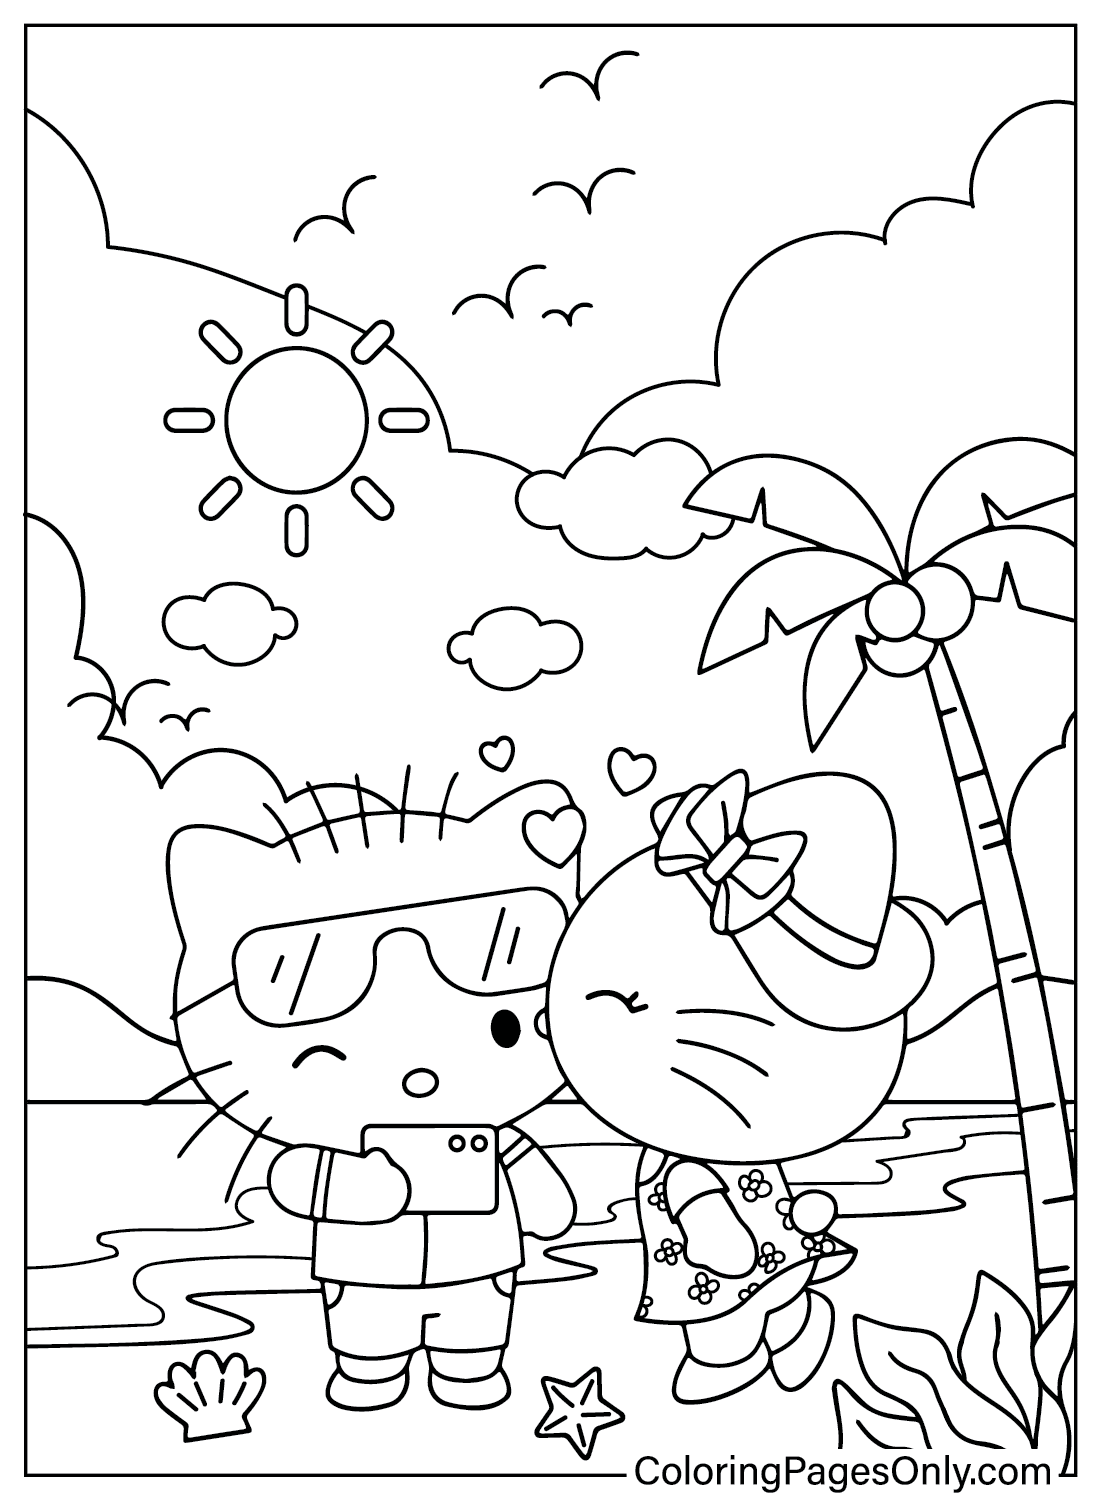 Página para colorir da Hello Kitty para impressão gratuita